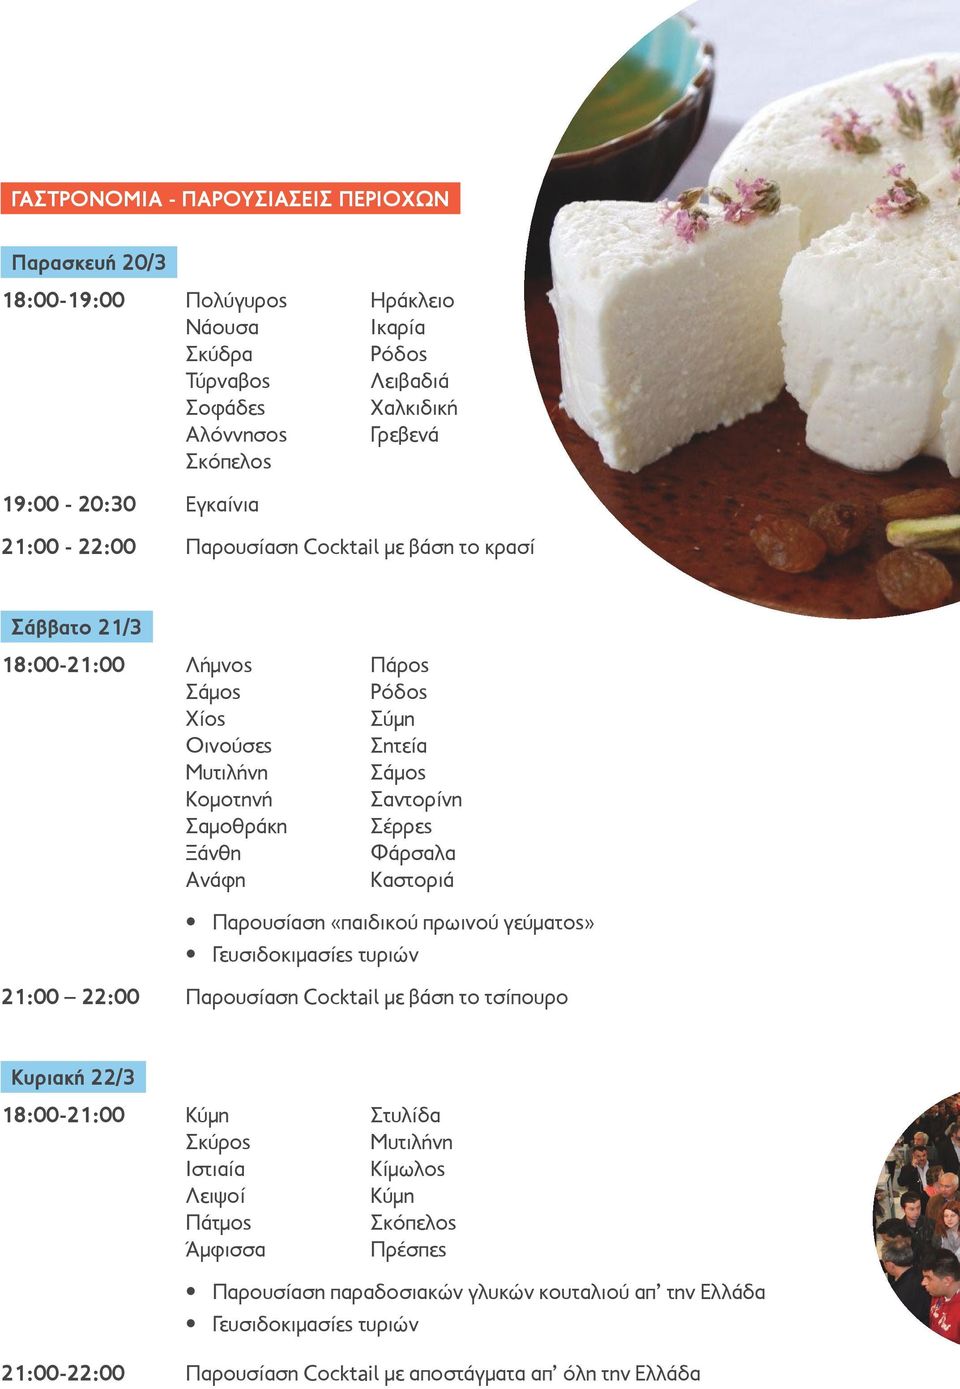 Φάρσαλα Ανάφη Καστοριά Παρουσίαση «παιδικού πρωινού γεύματος» Γευσιδοκιμασίες τυριών 21:00 22:00 Παρουσίαση Cocktail με βάση το τσίπουρο Κυριακή 22/3 18:00-21:00 Κύμη Στυλίδα Σκύρος Μυτιλήνη